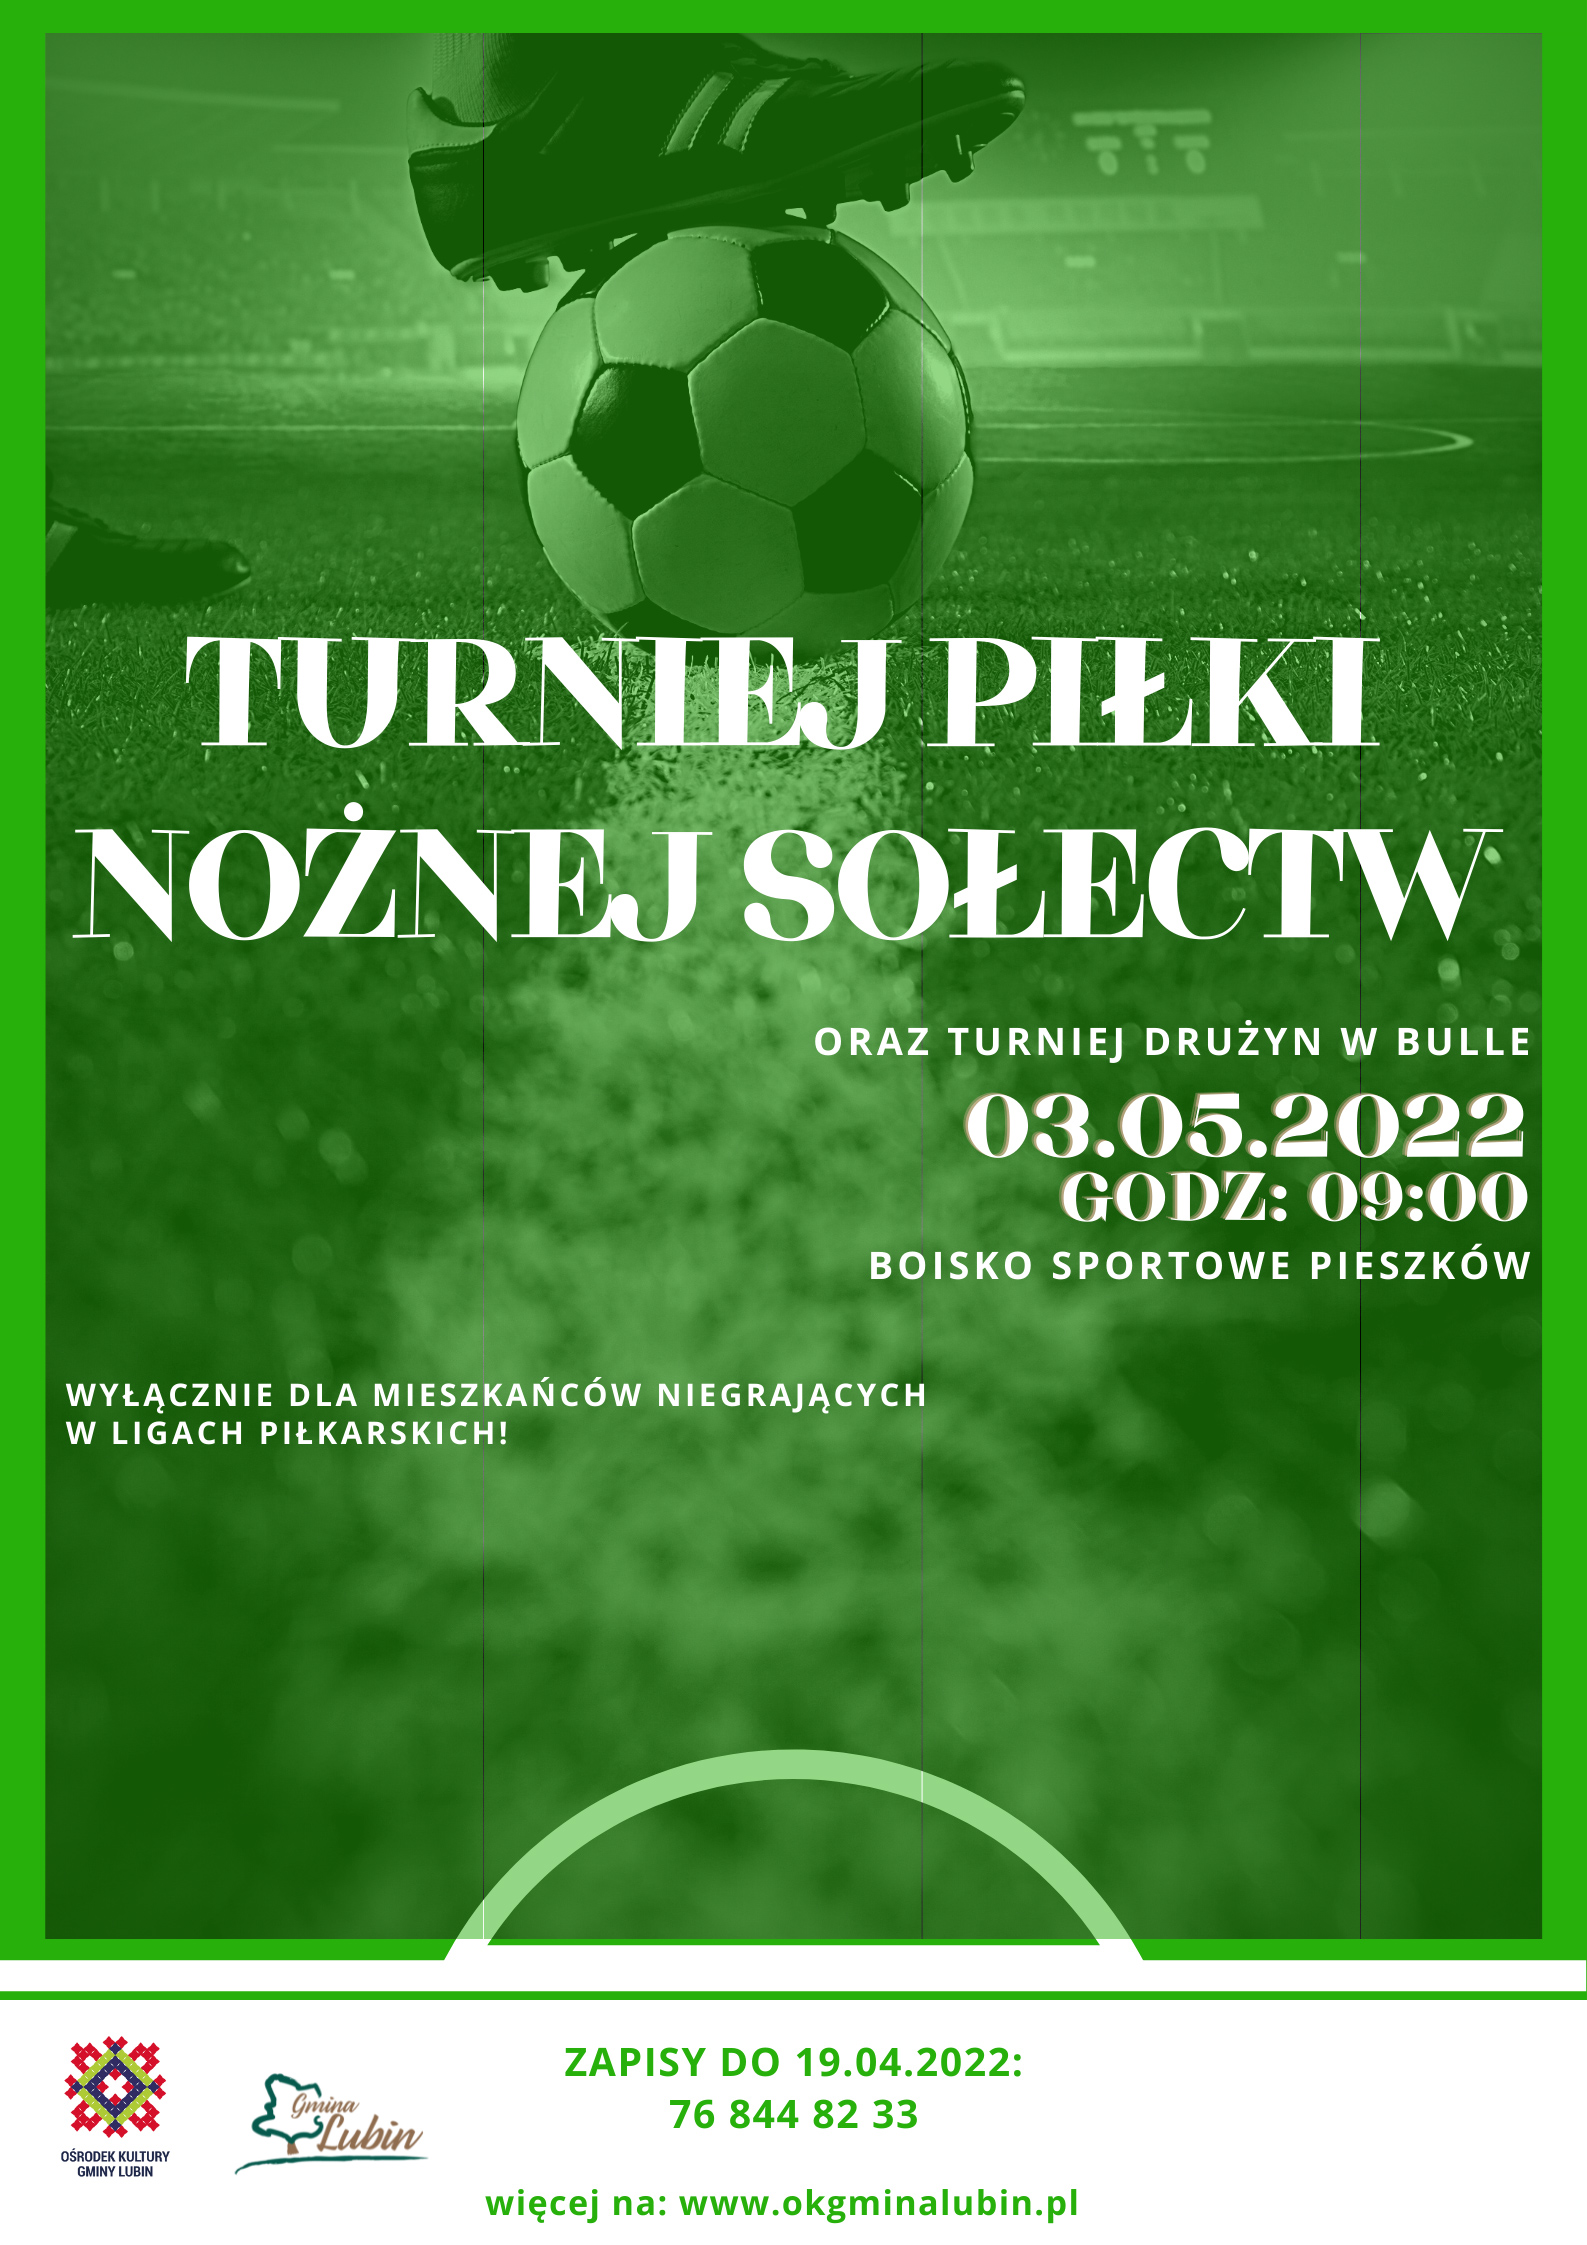 Turniej piłki nożnej sołectw 2022 - plakat